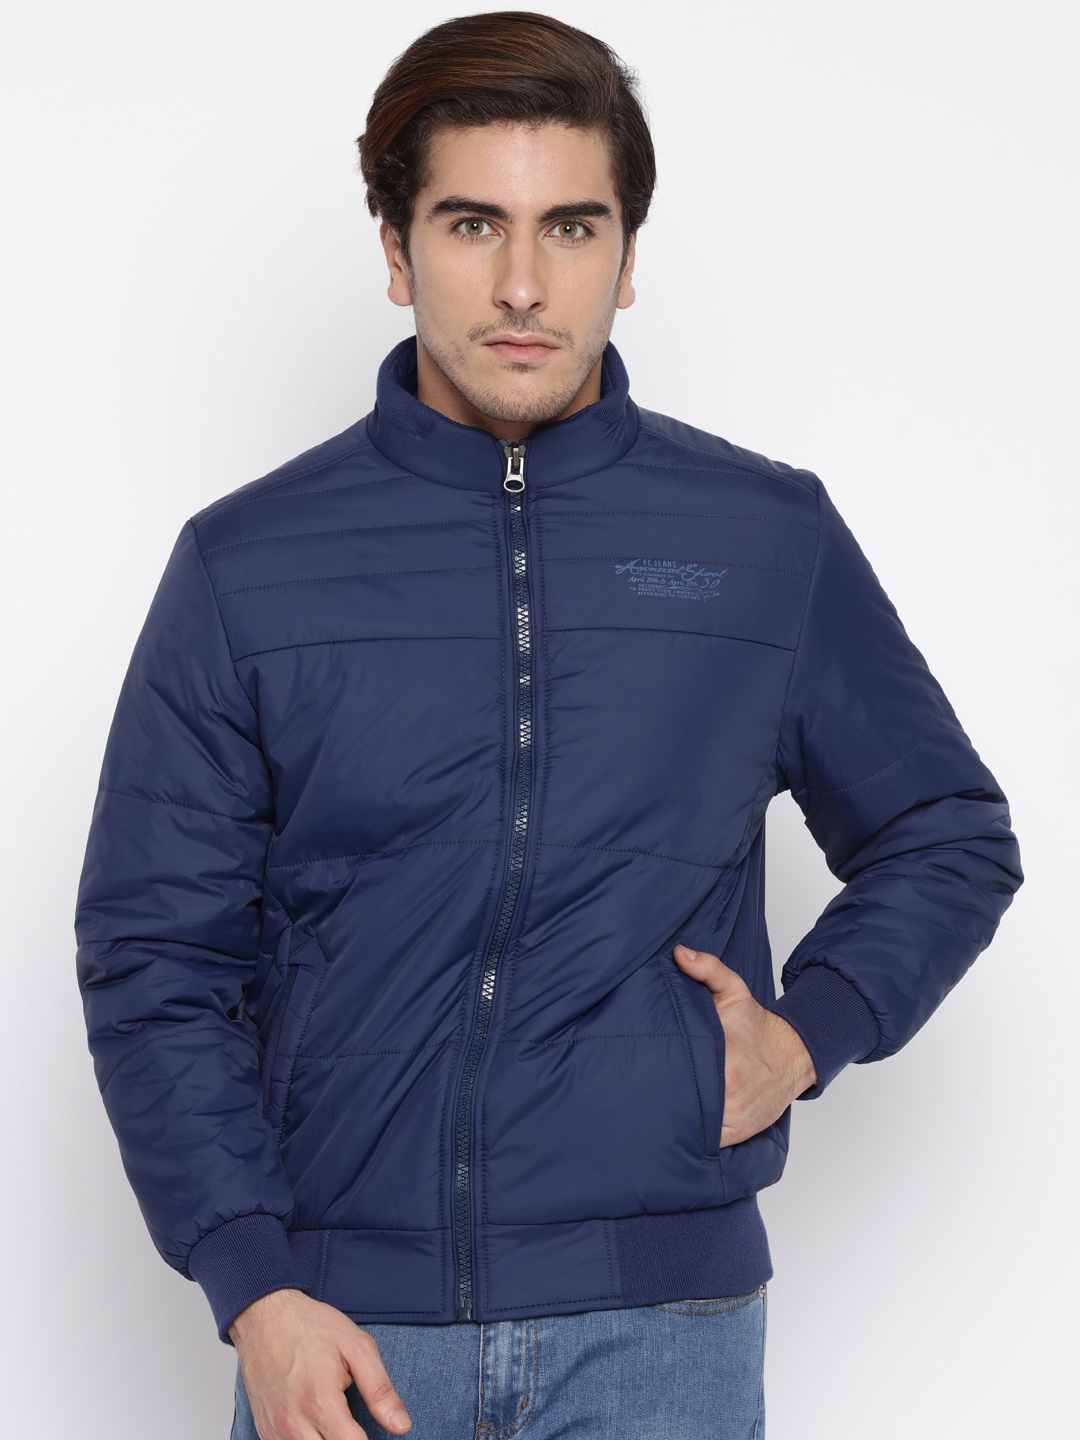 Buy Fort Collins Blue Jacket - Jackets for Men 1602820 | Myntra